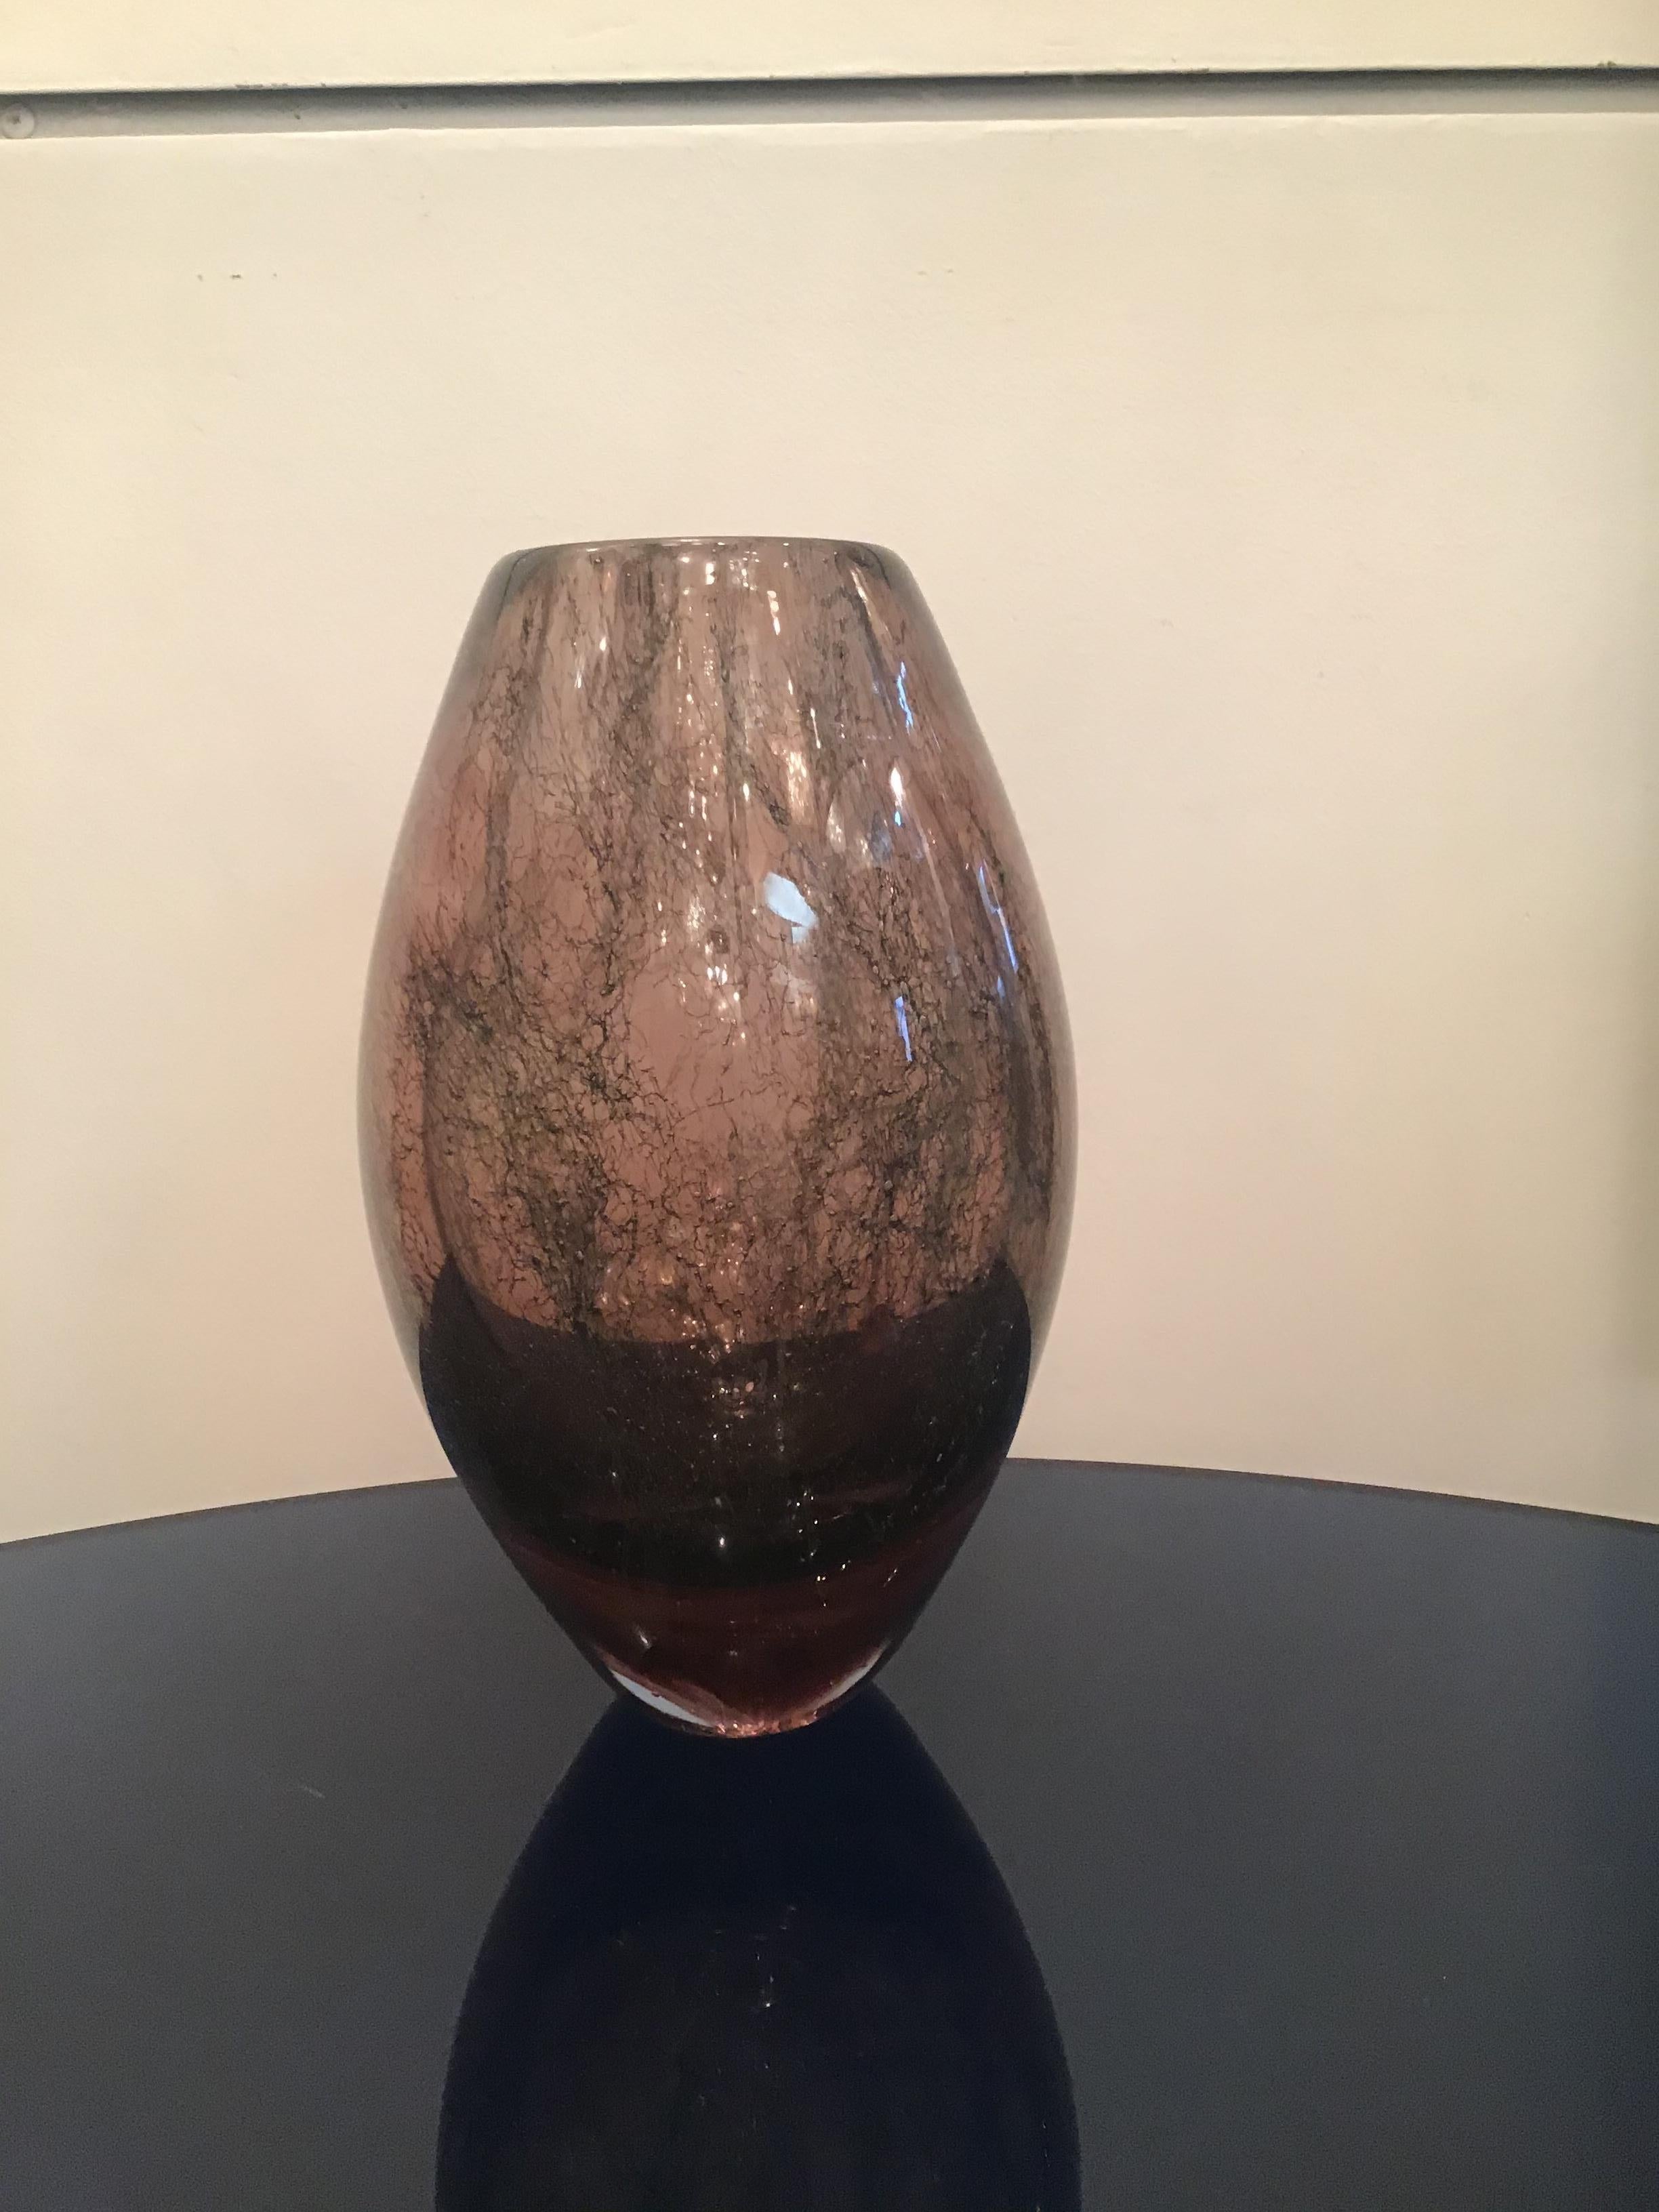 Seguso “ Flavio Poli” Vase Murano Glass 1955 Italy  For Sale 1